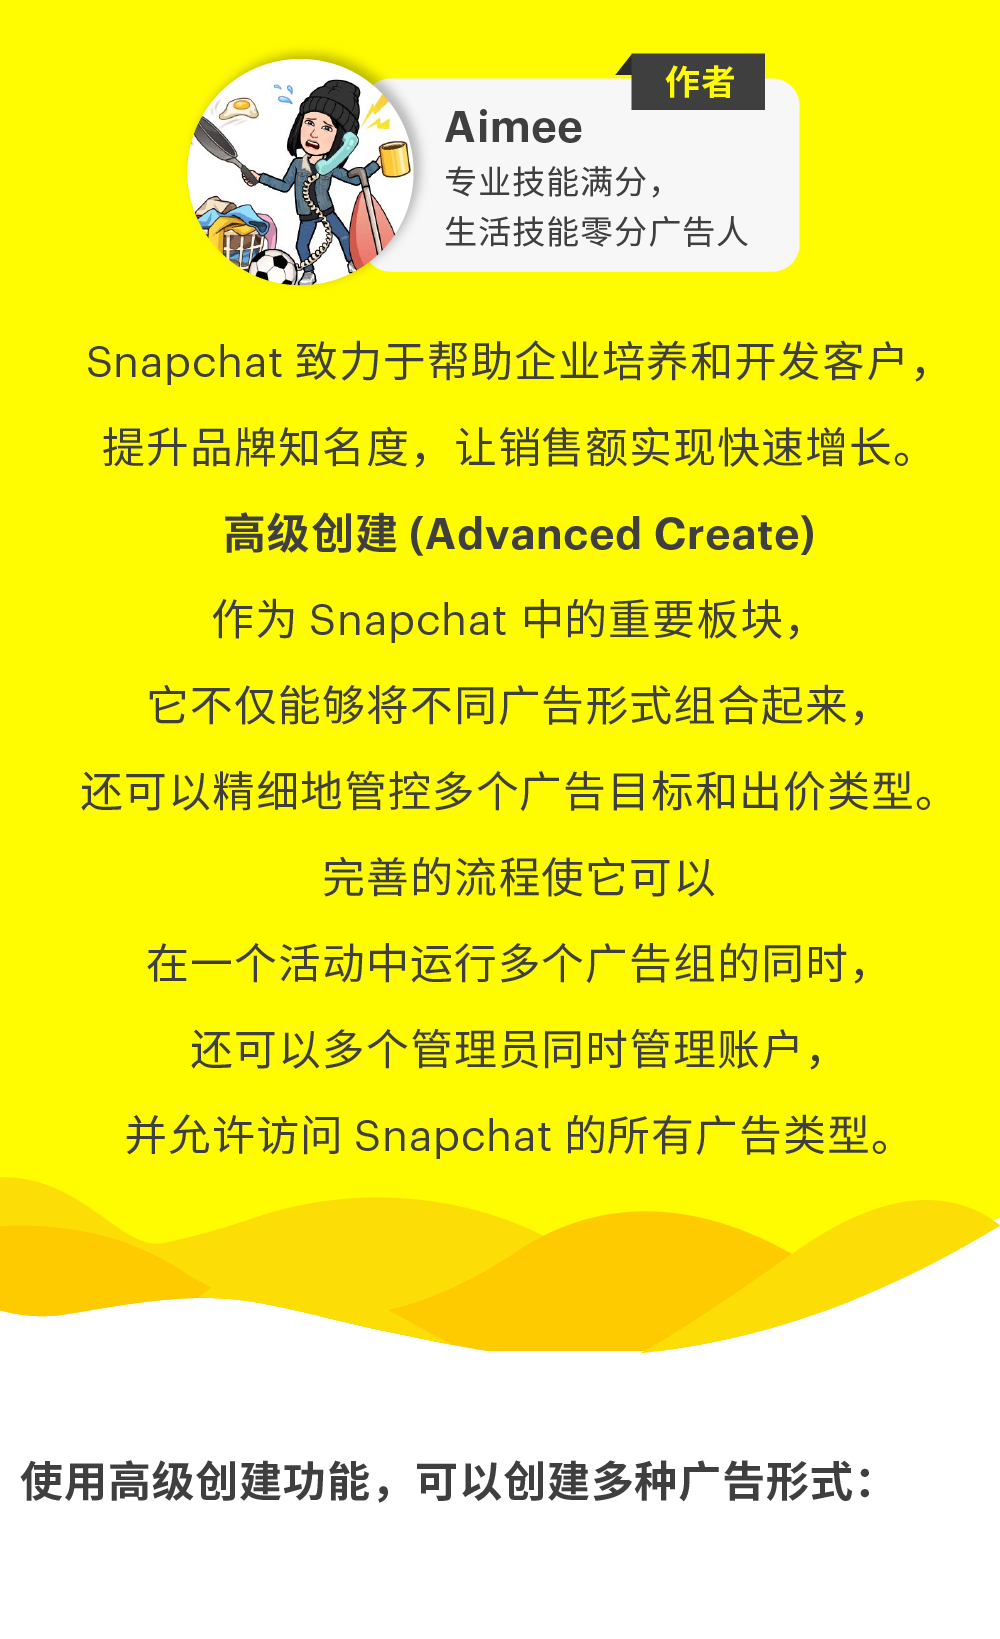 广告干货 | Snapchat 广告高级创建详解